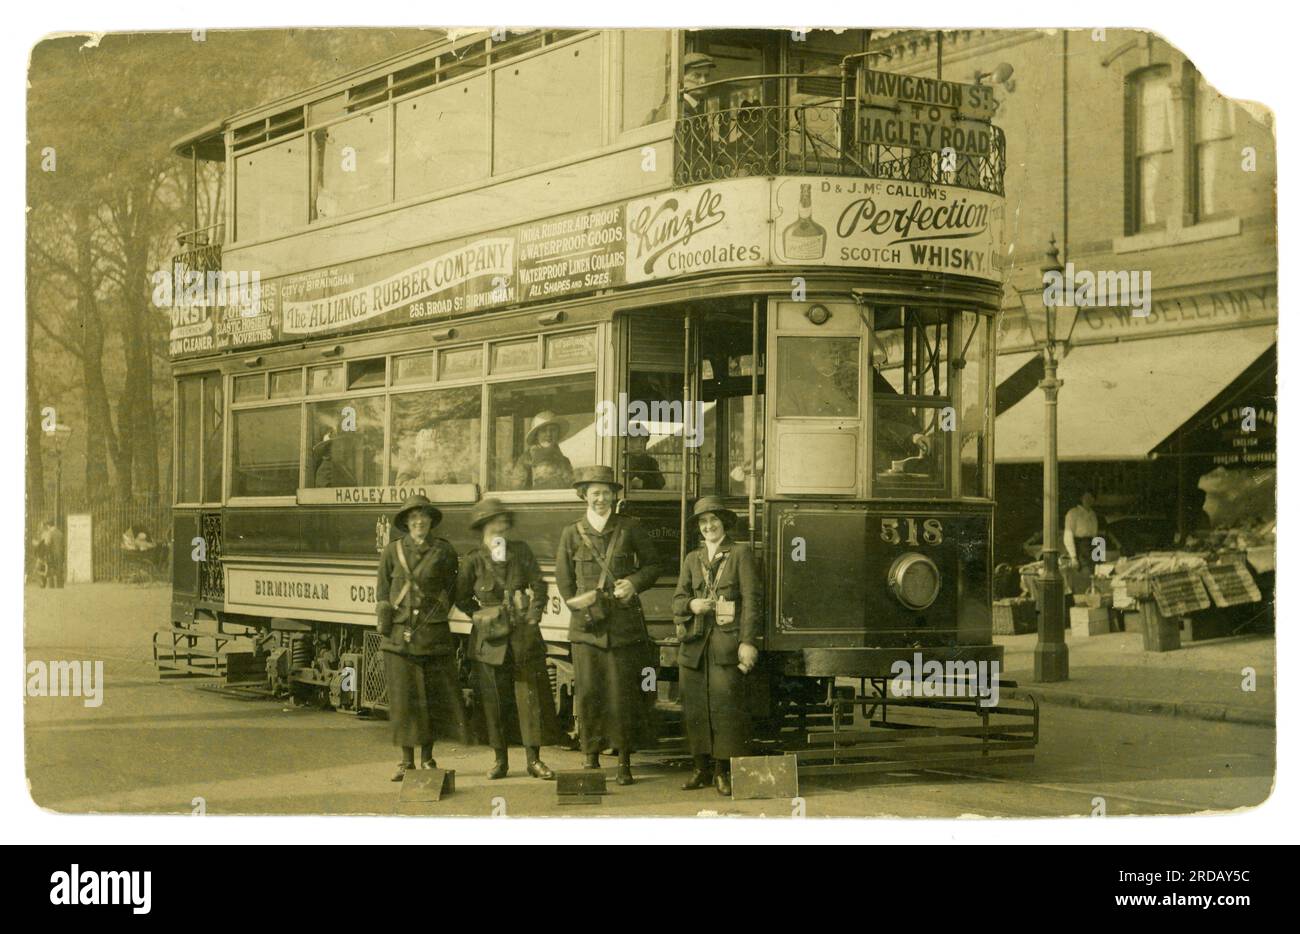 Originale Postkarte aus der WW1. Epoche mit weiblichen Straßenbahnleitern, möglicherweise neuen Rekruten, glücklich und lächelnd, arbeiten im Dienst als Straßenbahndirigenten, die den Kriegsanstrengungen halfen, auf der Hagley Road Straßenbahn, die Straßenbahnlinie von der Navigation Street zur Hagley Road Die Postkarte wurde von Smethwick (an der Straßenbahnlinie), West Midlands, Birmingham, Staffordshire, England, Großbritannien, abgeschickt. Betrieben von der Birmingham and Midland Tramways Ltd Veröffentlicht/datiert 23. Oktober 1915 Stockfoto